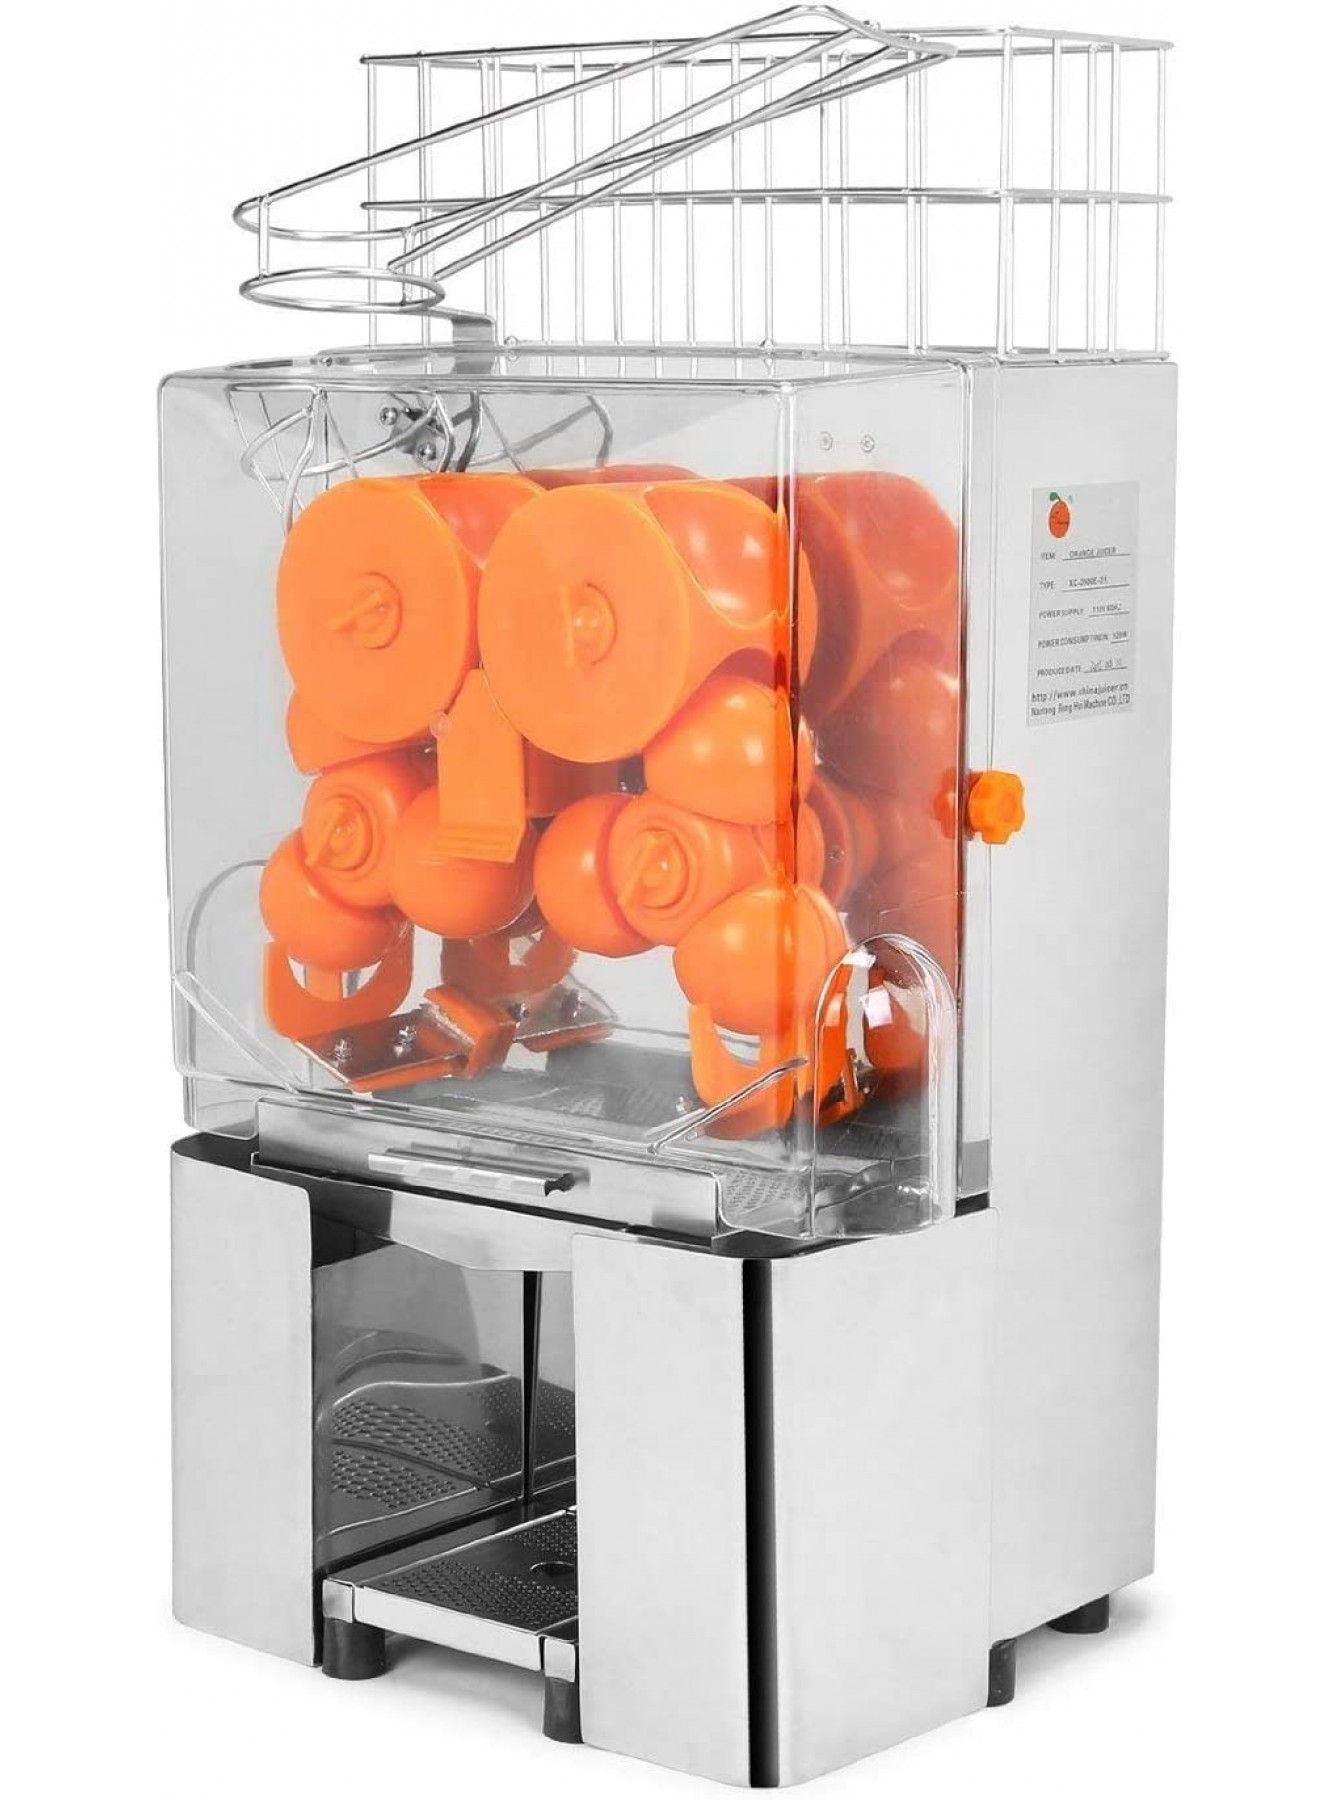 Orange Juice Machine Commercial 120W Orange Juicer 304 Stainless Steel Commercial Orange Juicer Machine 20-22 Oranges per Minute B07FVJRCH2